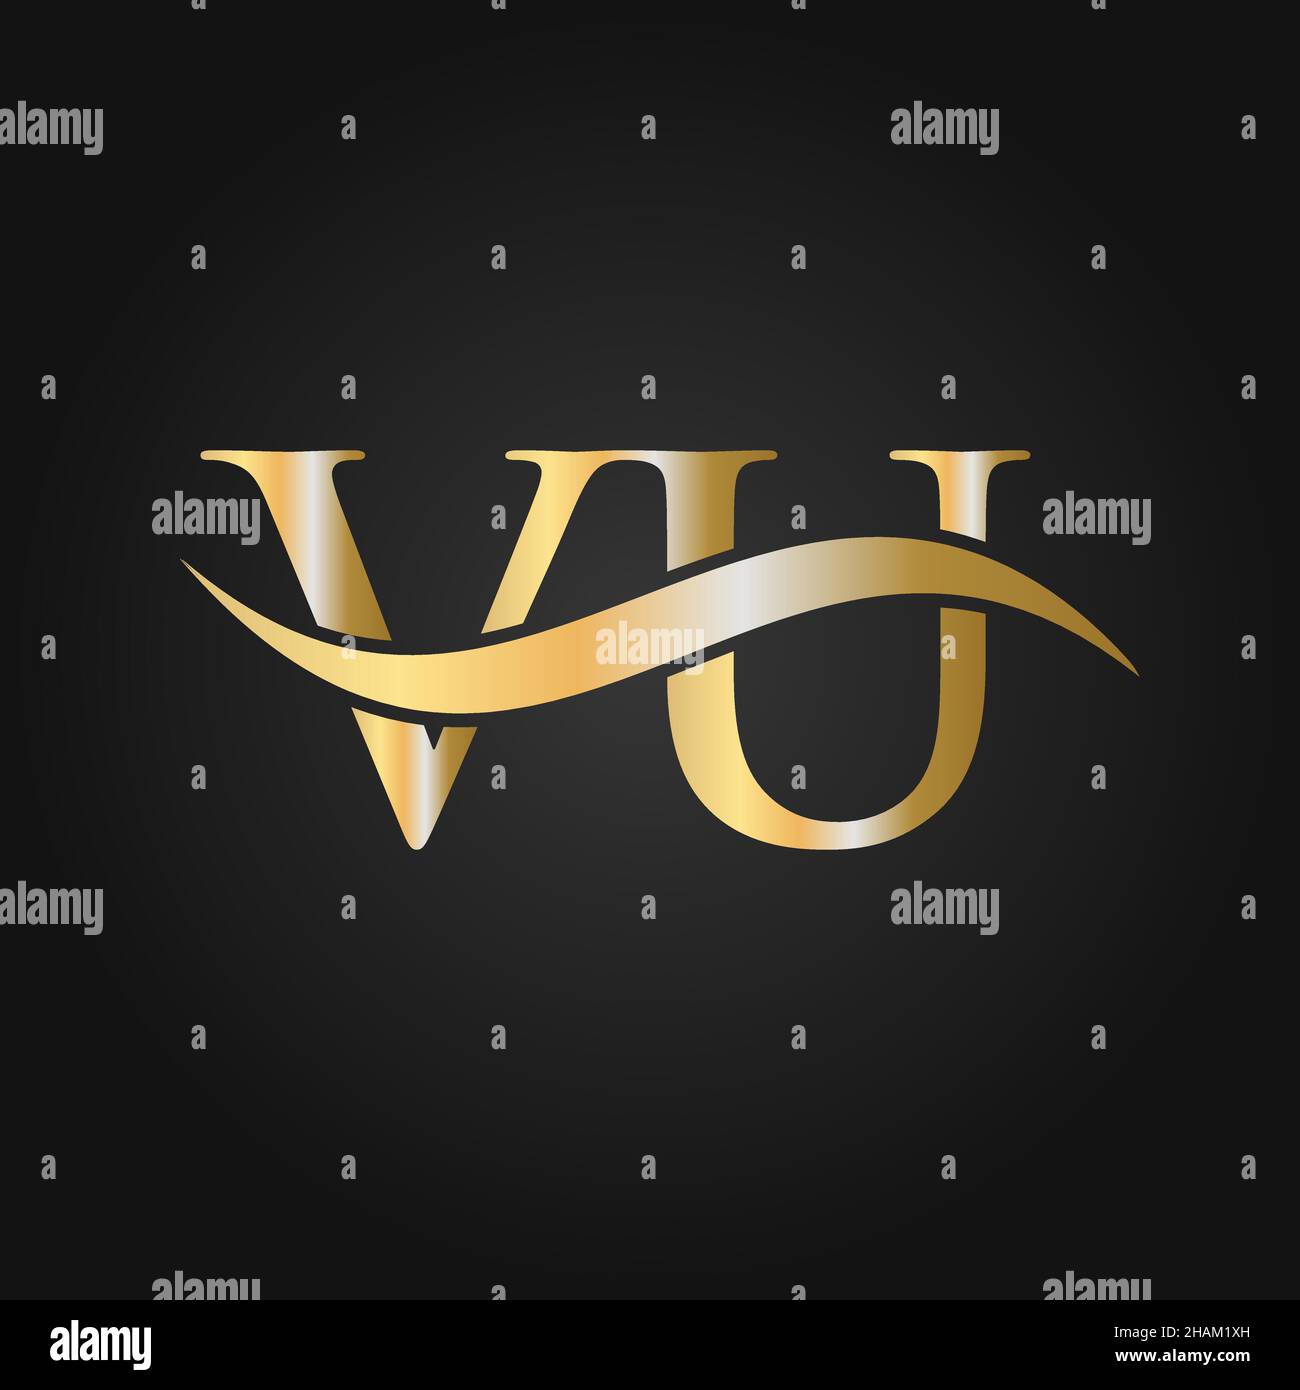 Modèle Vectoriel De Logo Vu Lettre Créative Avec Couleur Noire